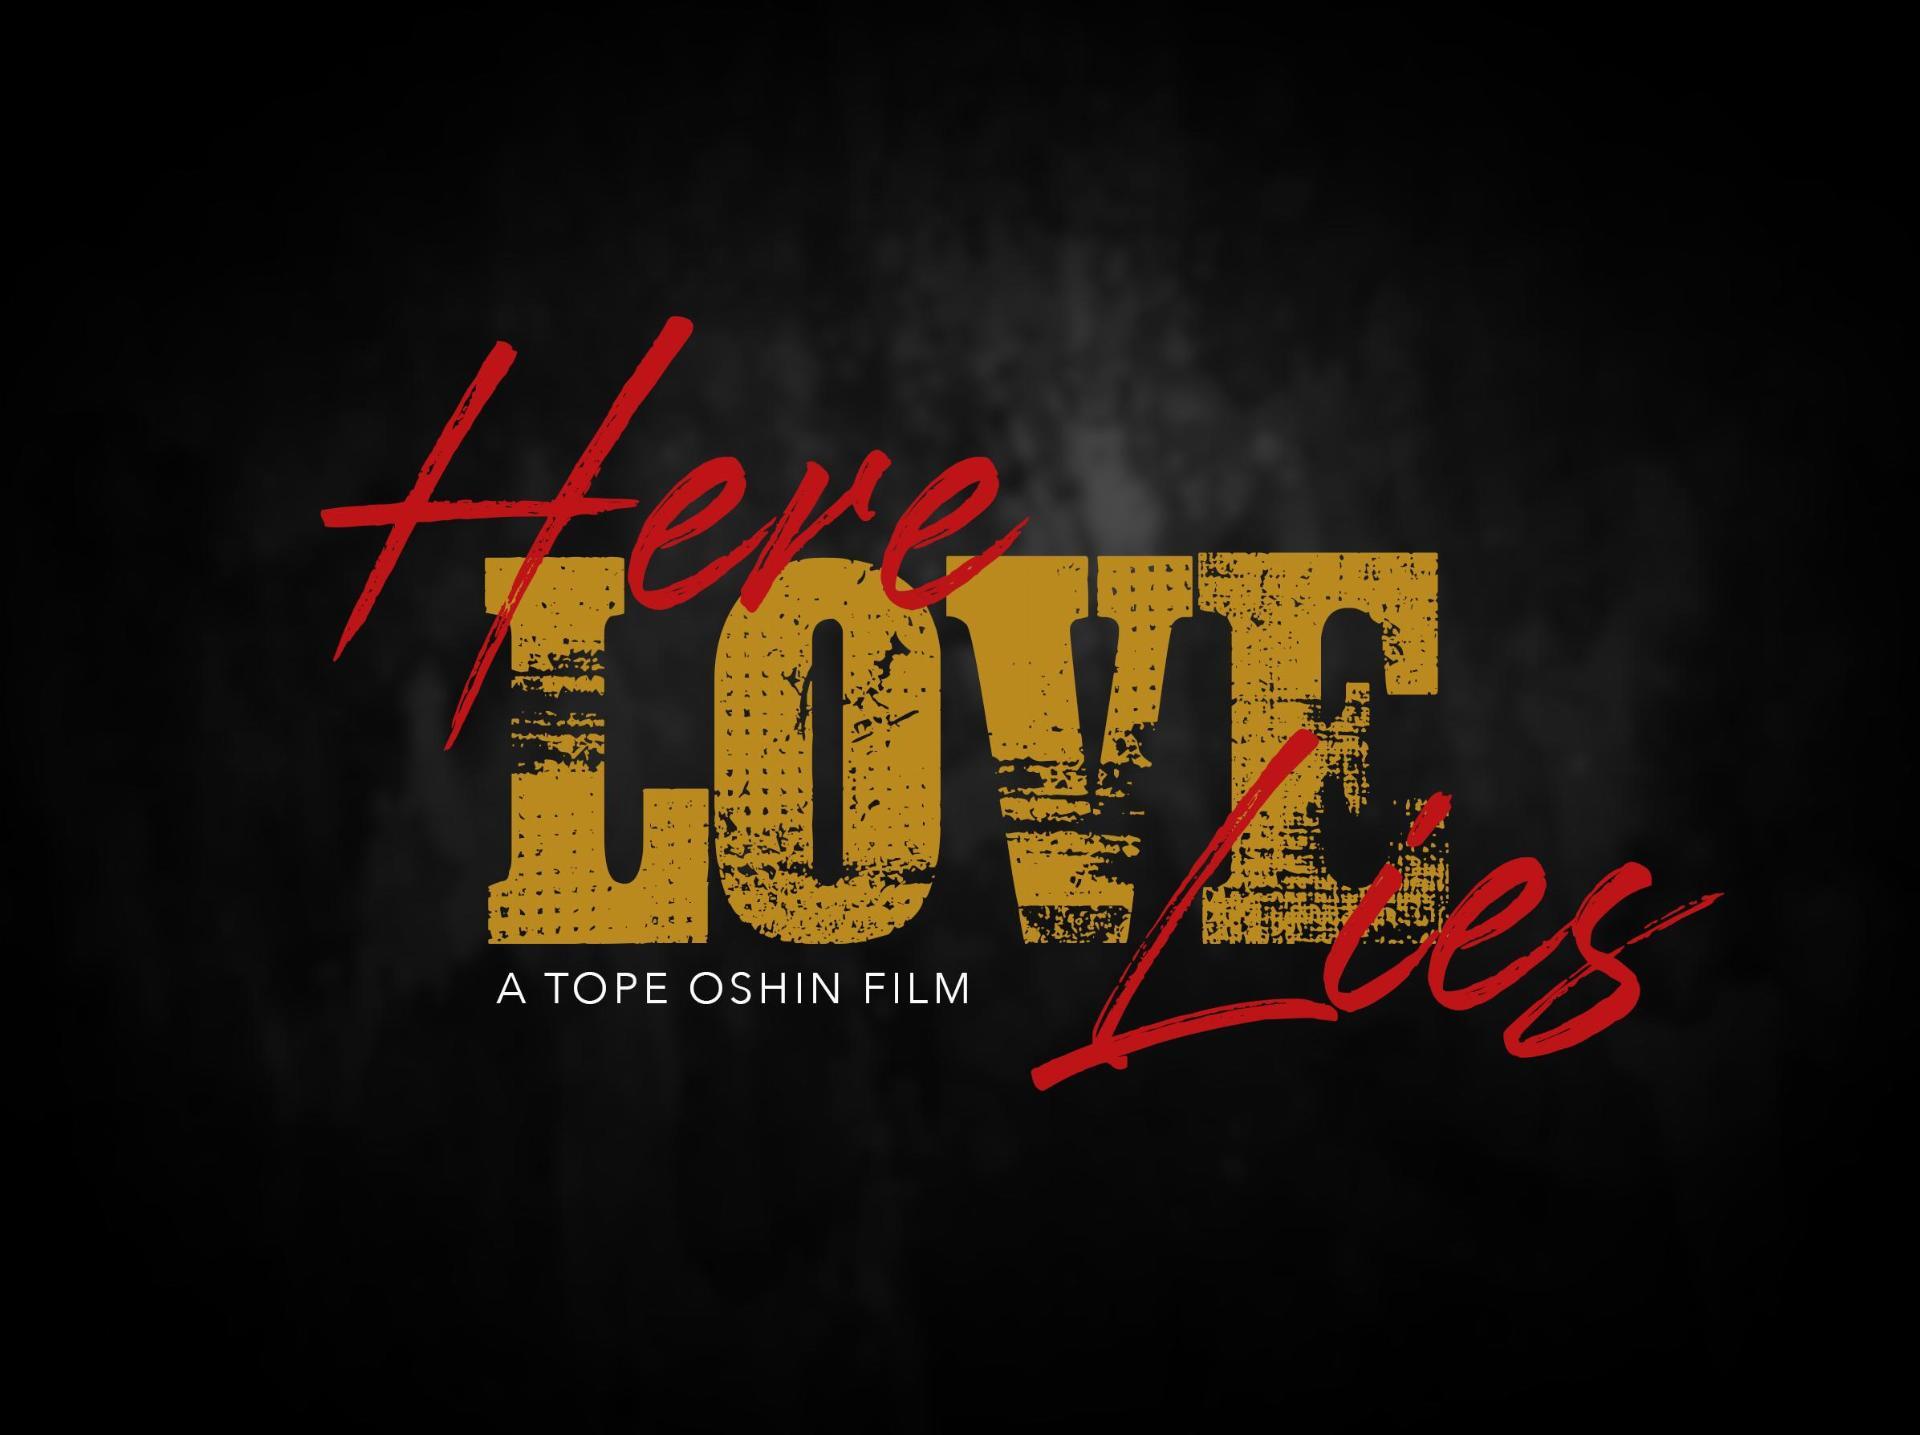 სიყვარული აქ არის / Here Love Lies